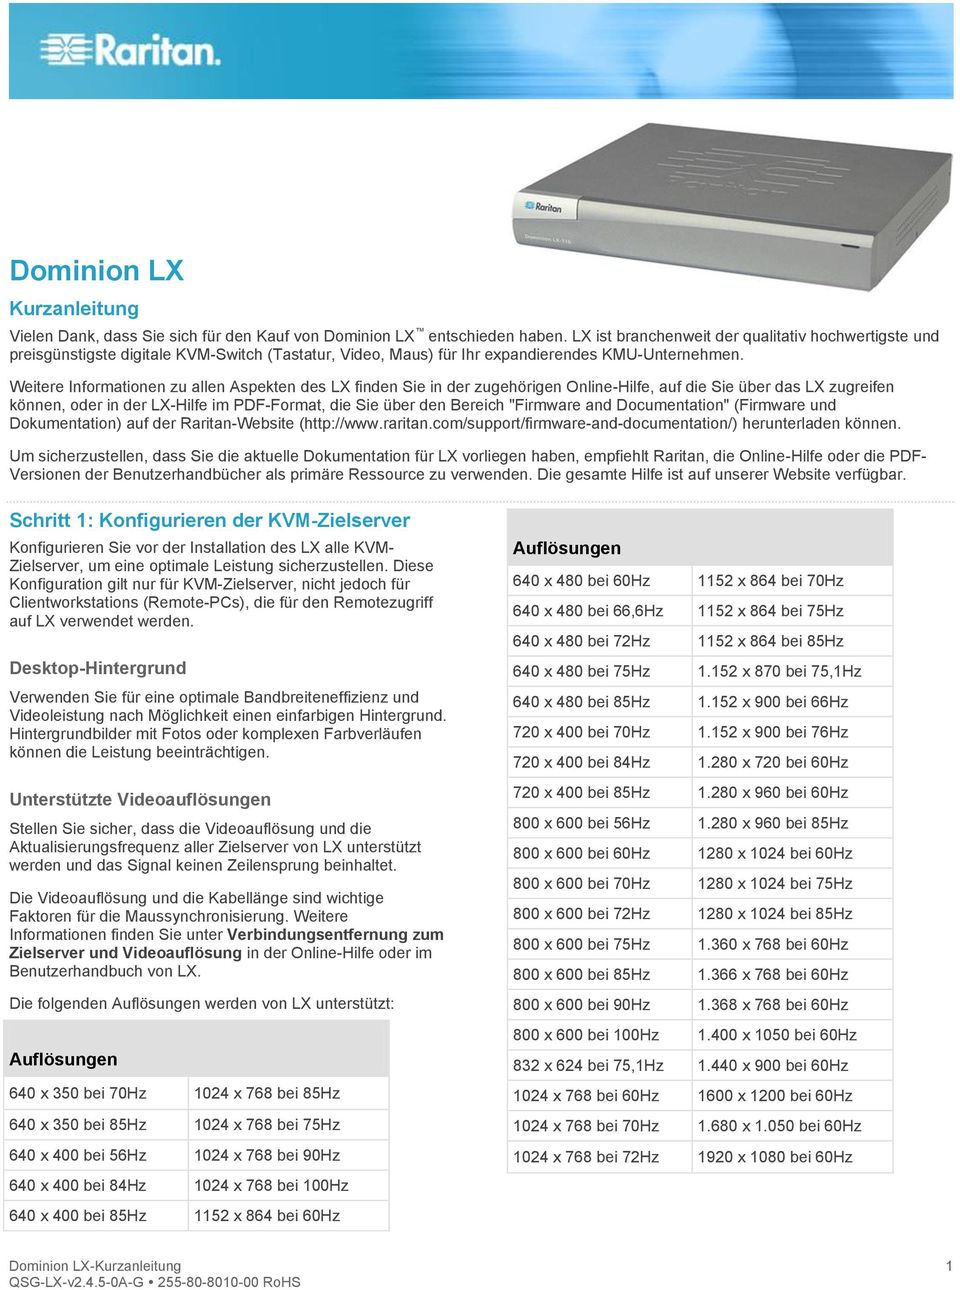 Weitere Informationen zu allen Aspekten des LX finden Sie in der zugehörigen Online-Hilfe, auf die Sie über das LX zugreifen können, oder in der LX-Hilfe im PDF-Format, die Sie über den Bereich